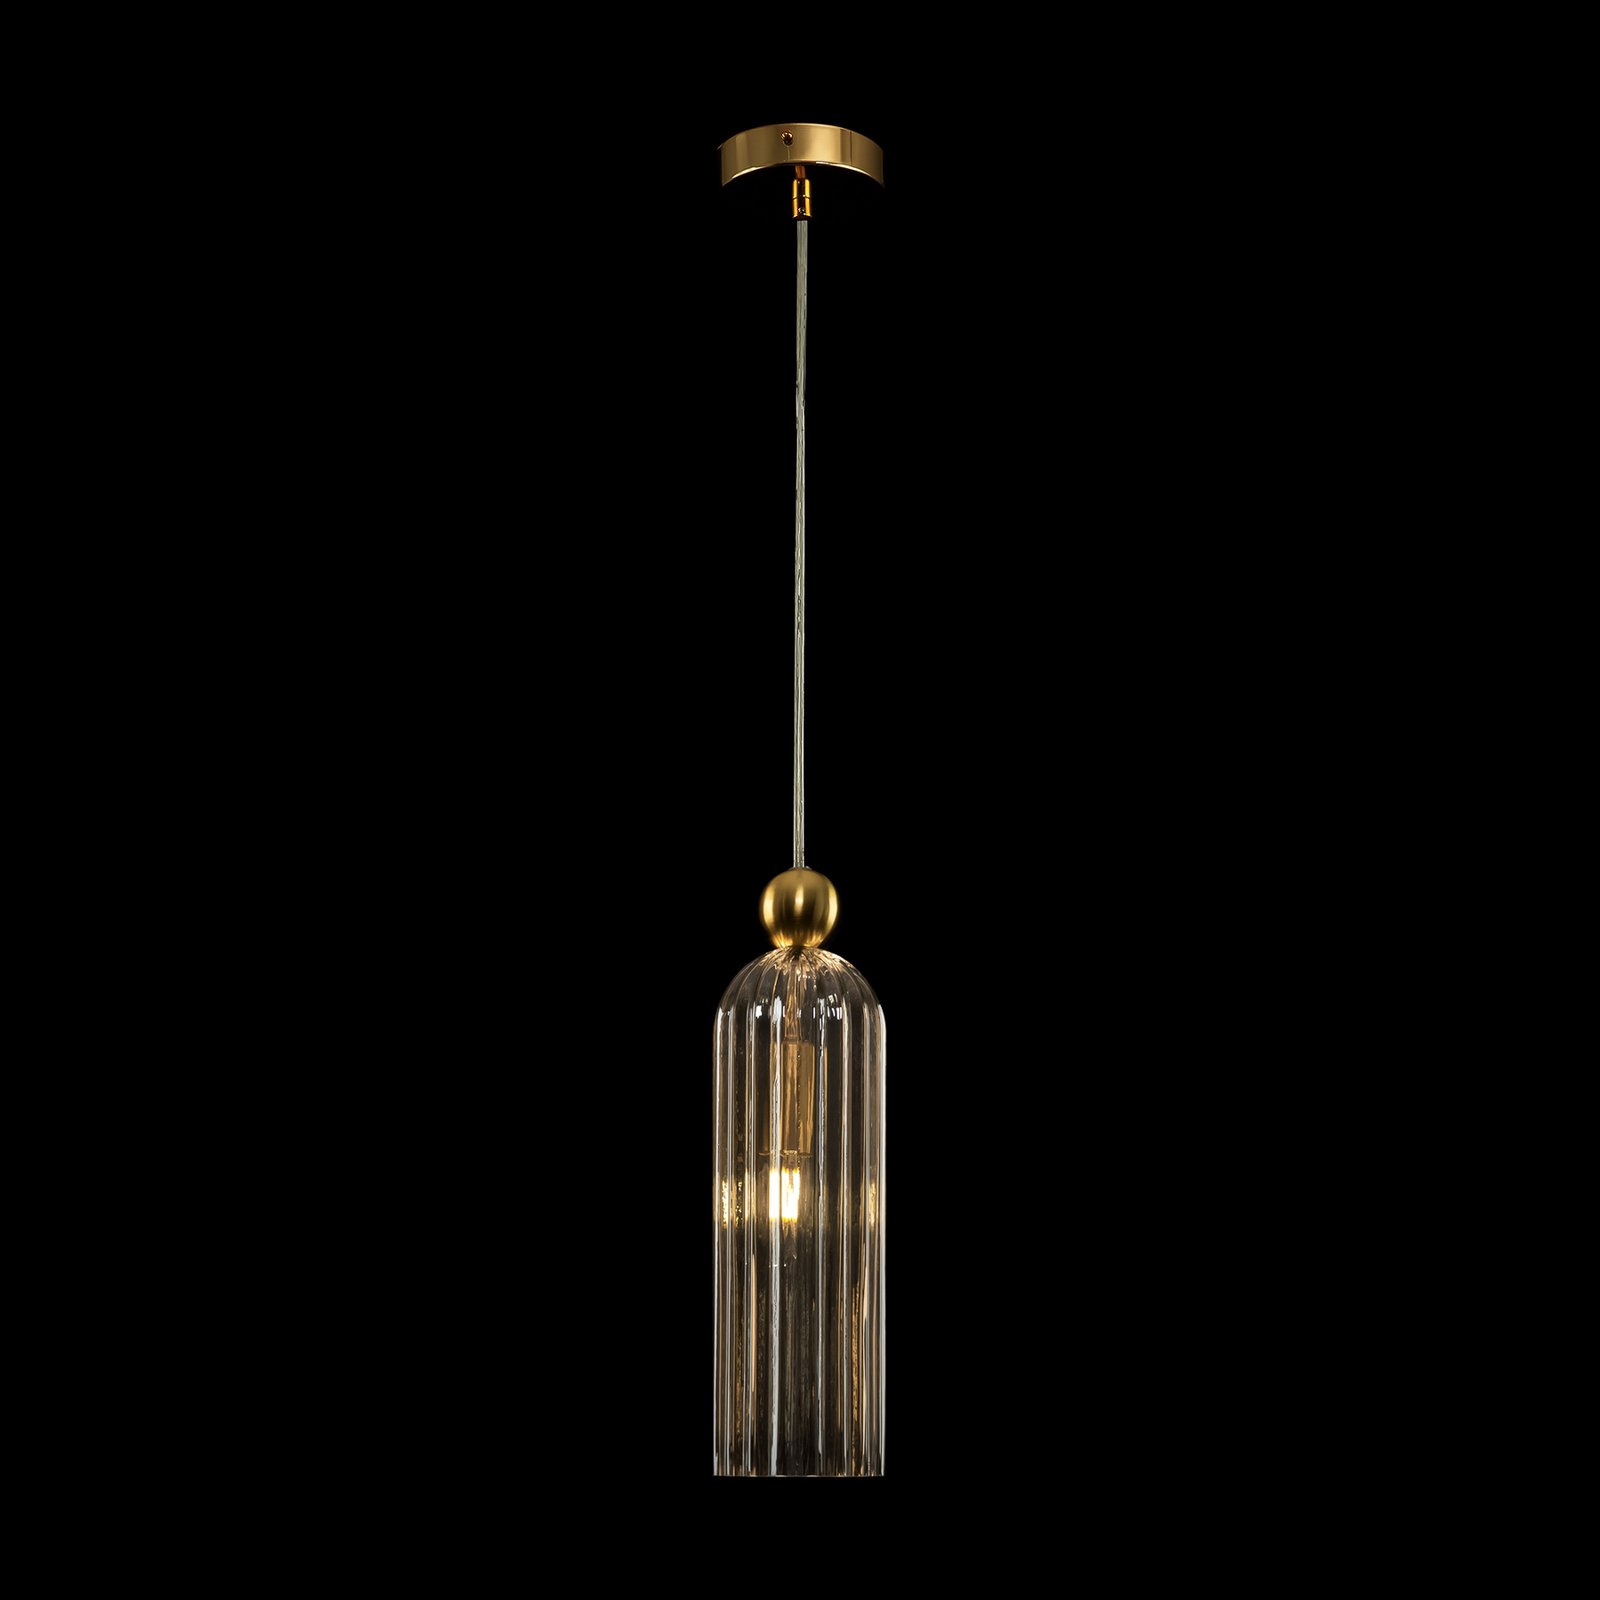 Maytoni Antic hanglamp, glazen kap in Cognac